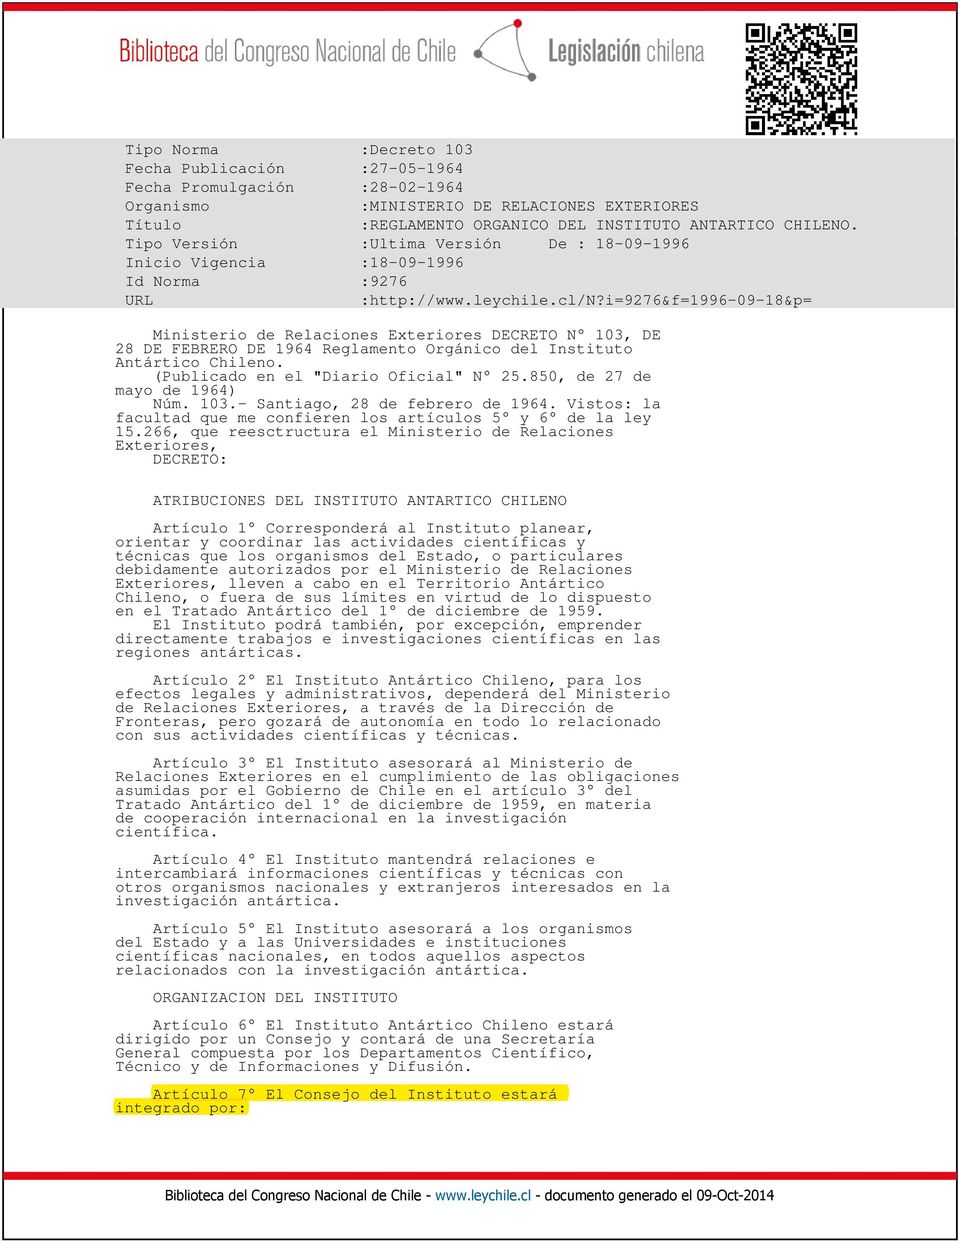 i=9276&f=1996-09-18&p= Ministerio de Relaciones Exteriores DECRETO N 103, DE 28 DE FEBRERO DE 1964 Reglamento Orgánico del Instituto Antártico Chileno. (Publicado en el "Diario Oficial" N 25.